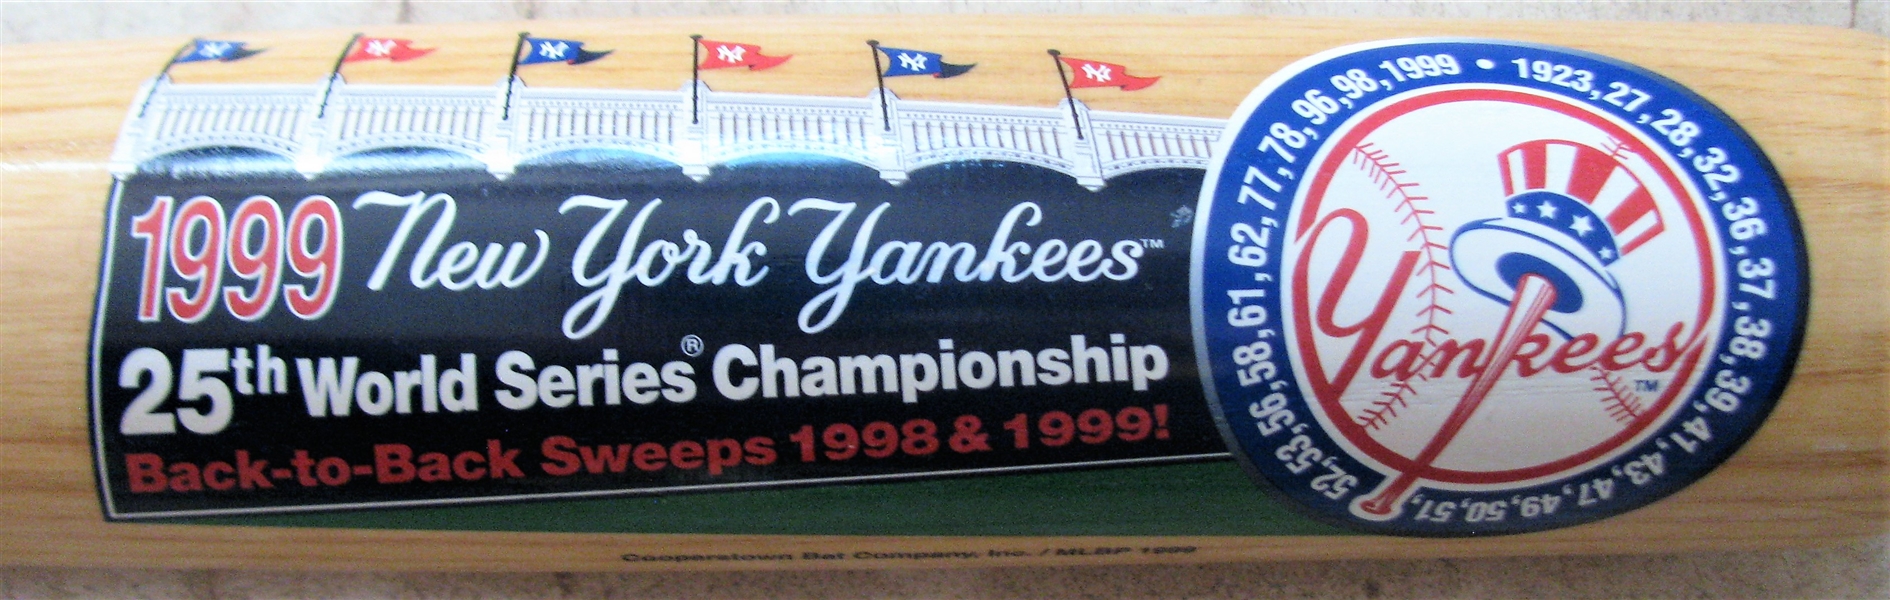 1999 NY YANKEE 25th CHAMPIONSHIP SERIES BAT